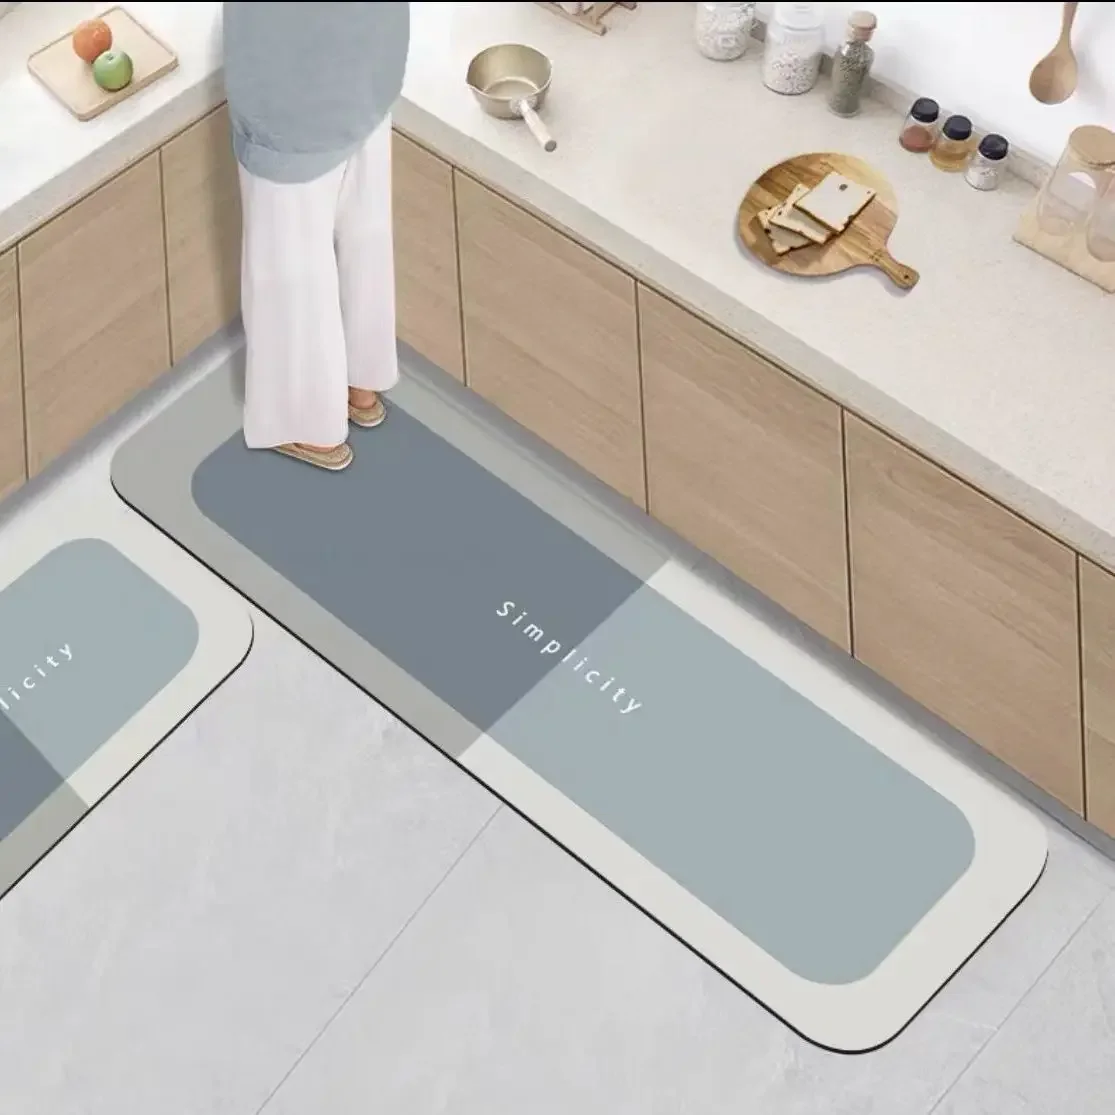 Non-slip, Waterproof, And Dirt-resistant Kitchen Floor Mat